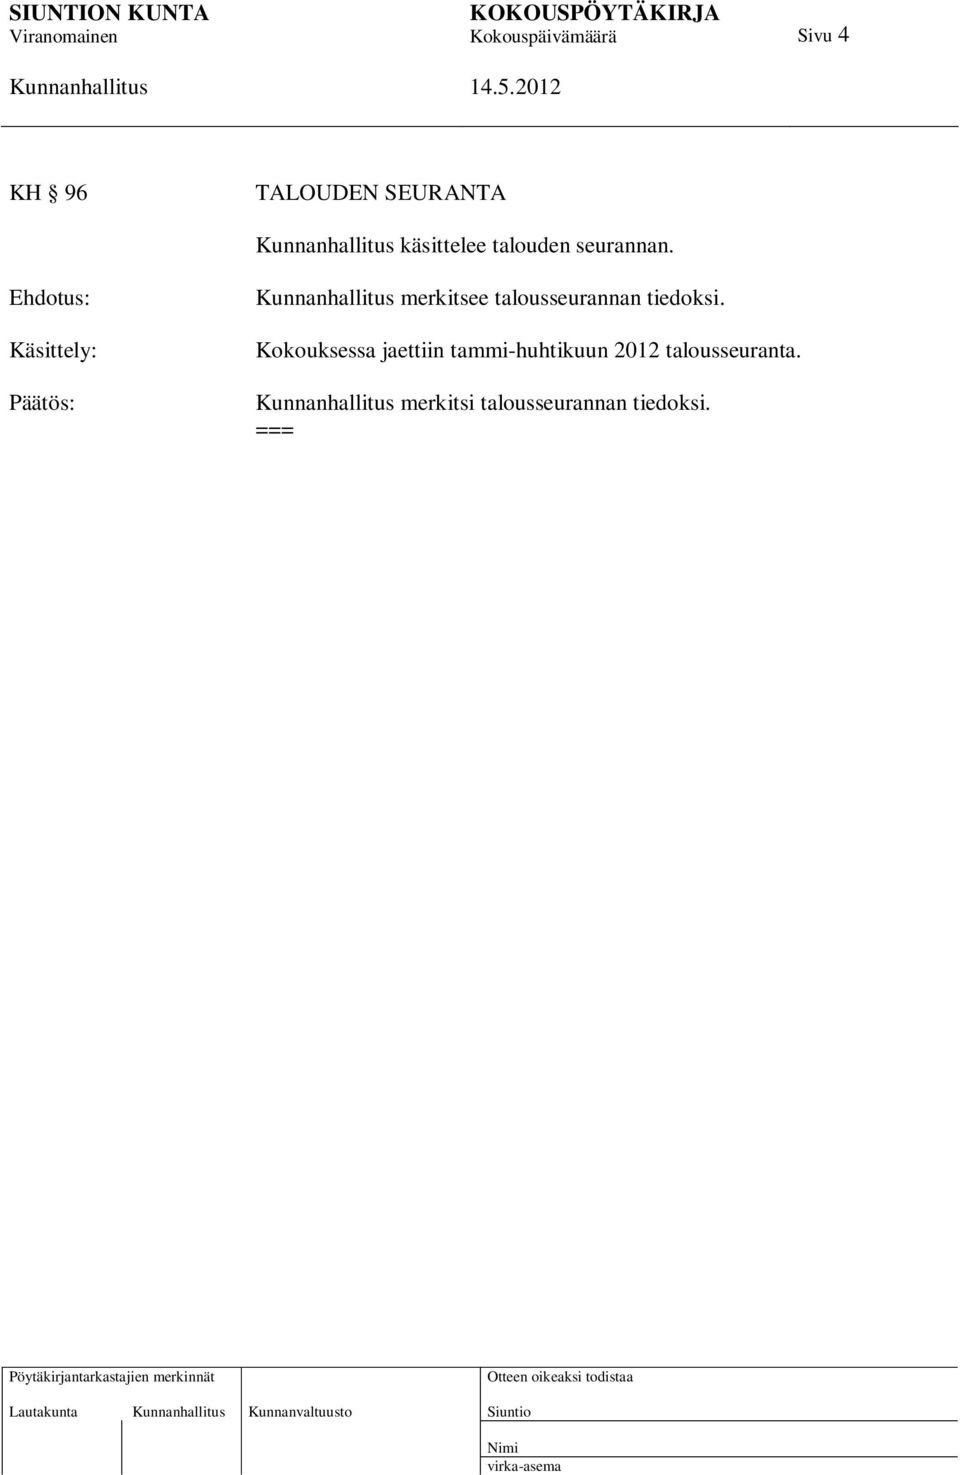 Käsittely: Päätös: Kokouksessa jaettiin tammi-huhtikuun 2012